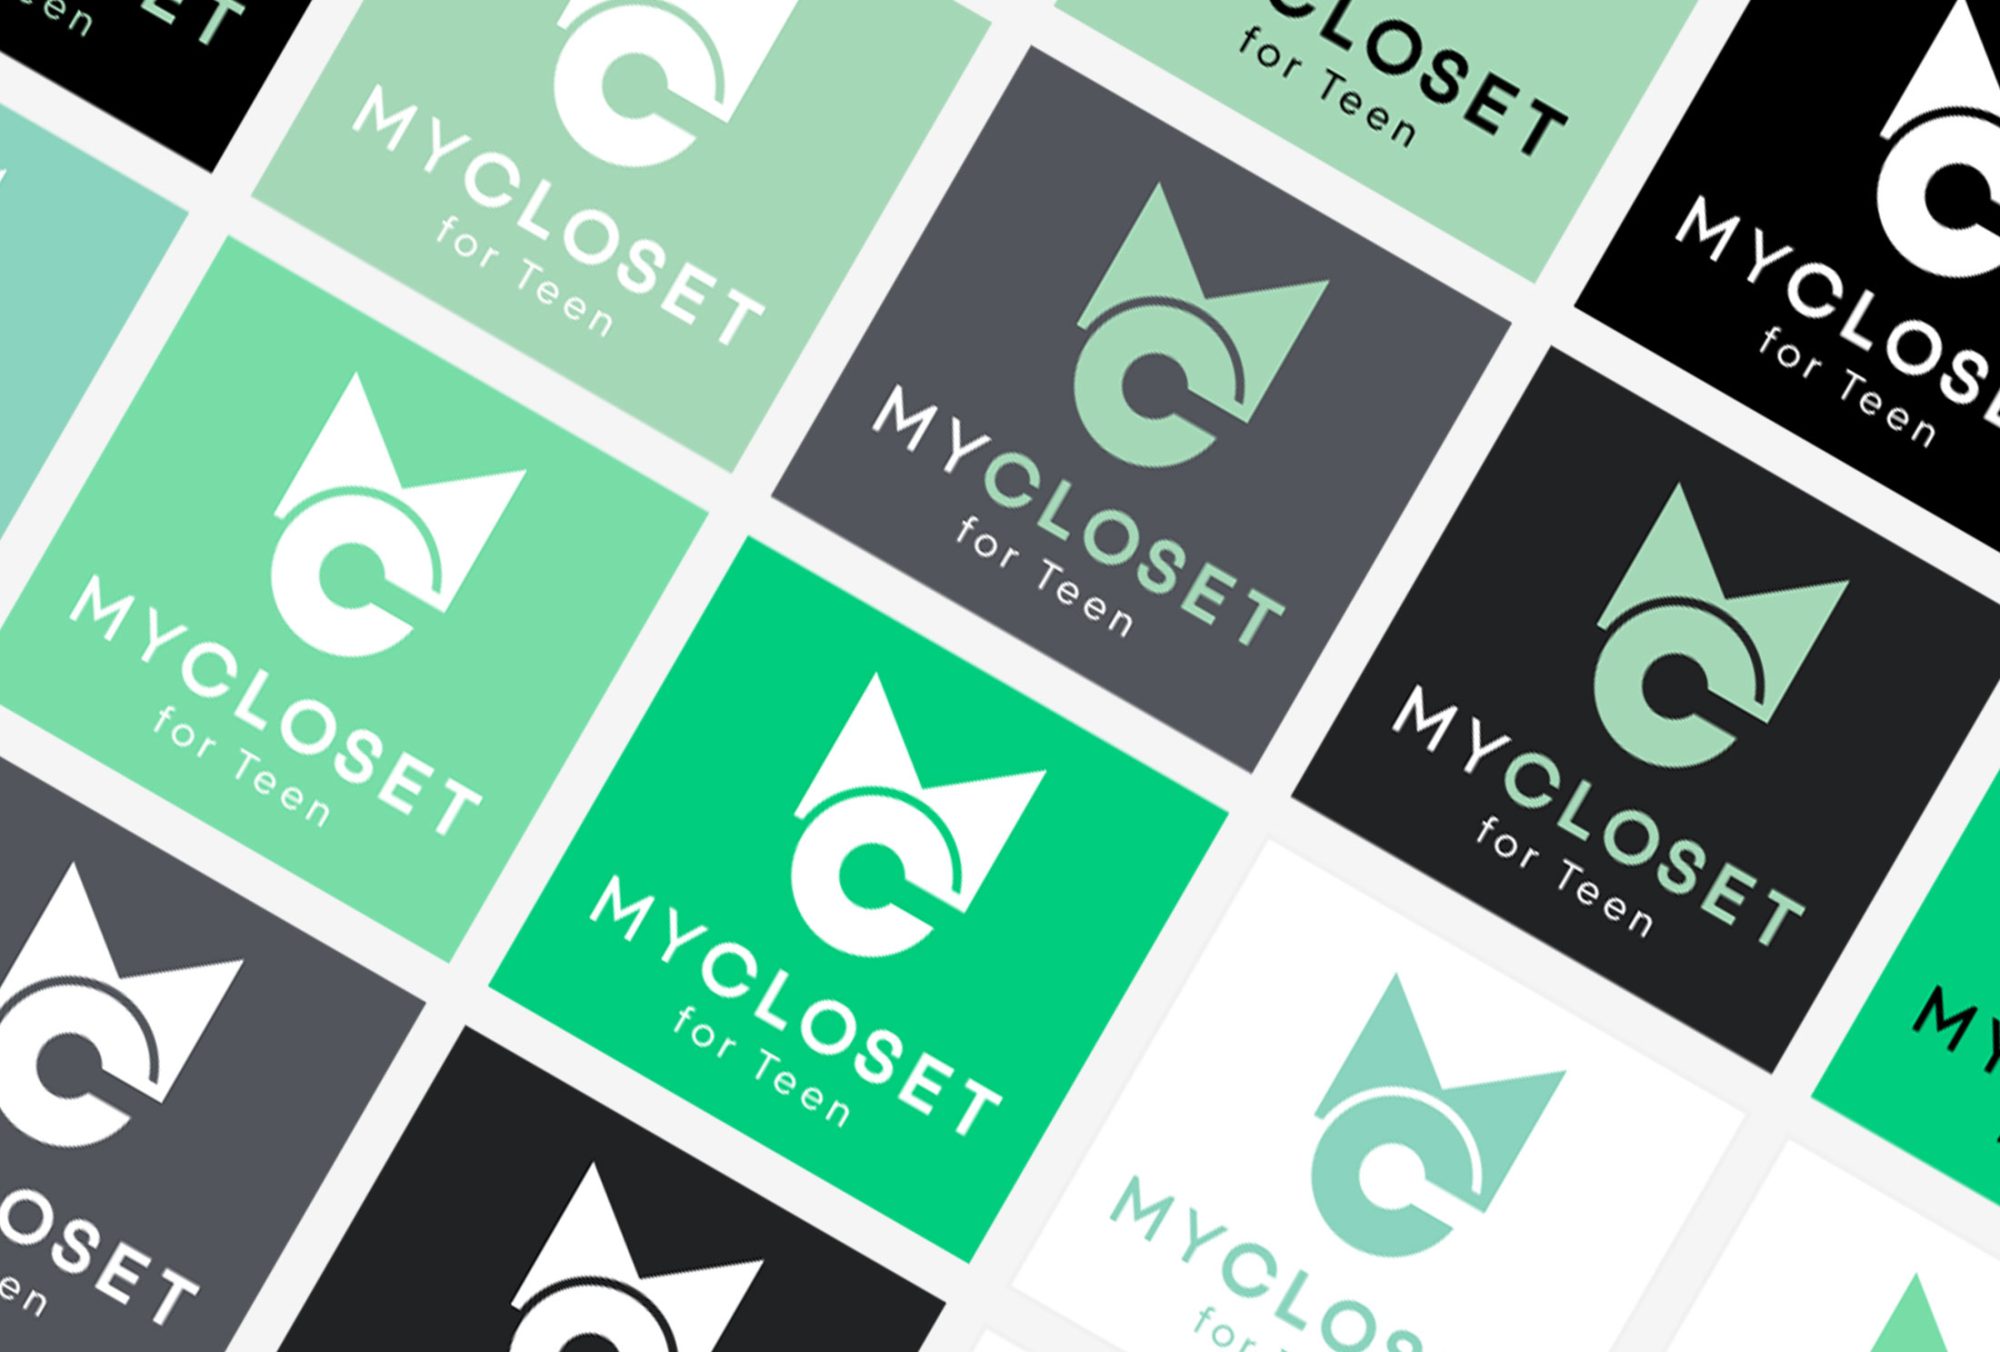 MyCloset